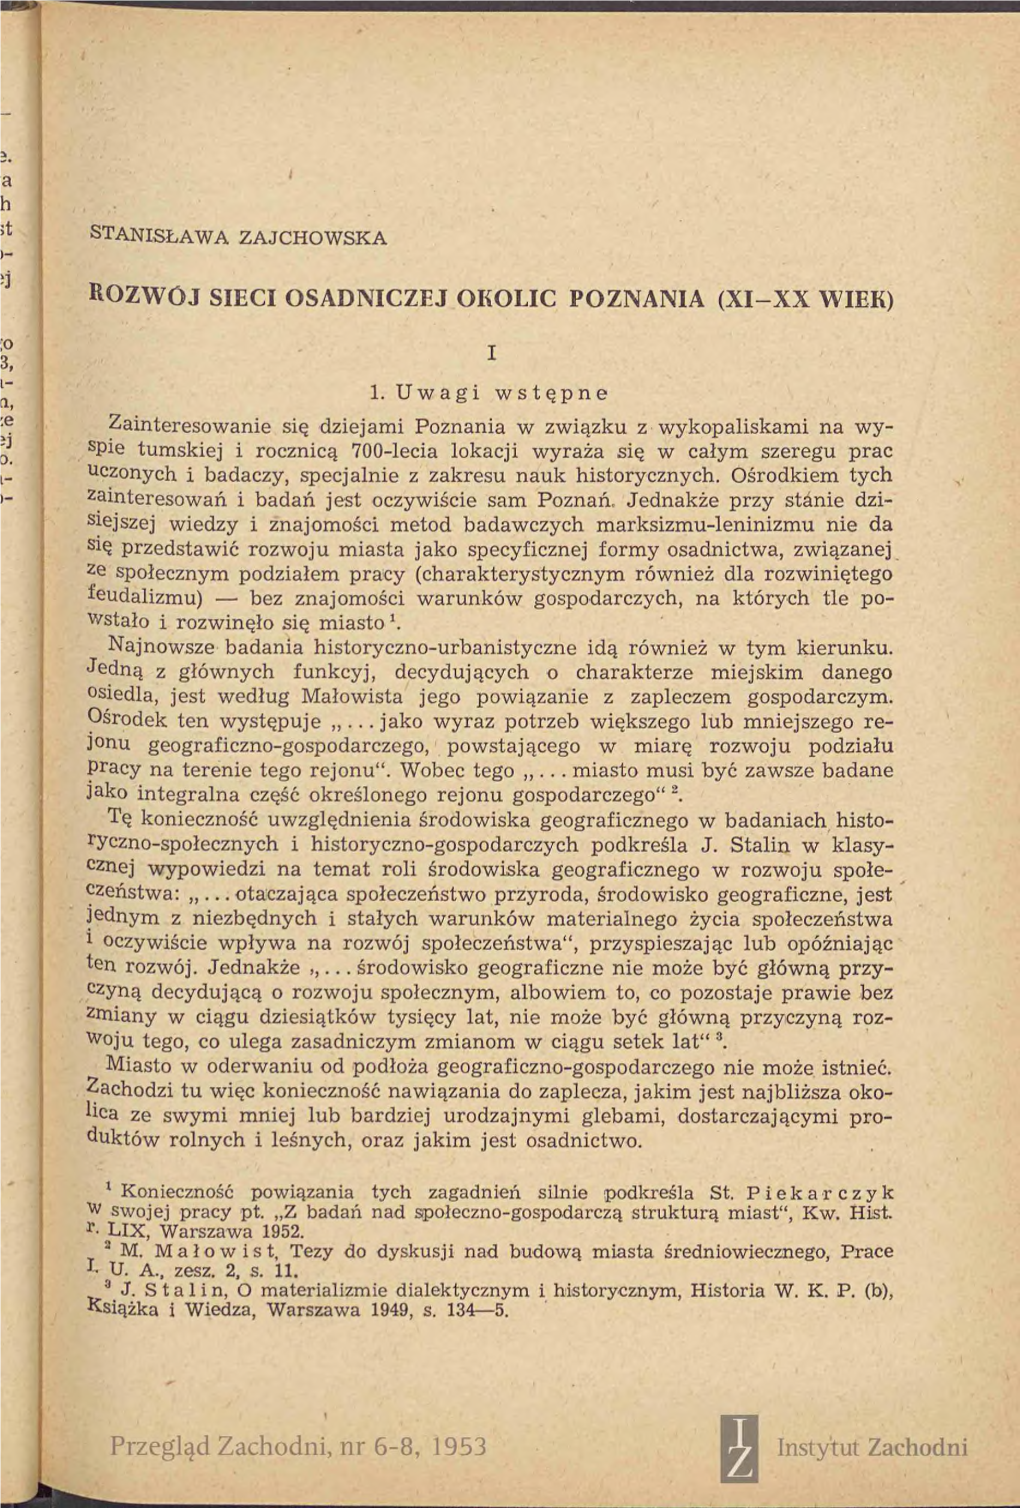 Przegląd Zachodni, Nr 6-8, 1953 Instytut Zachodni 102 Stanisława Zajchowska